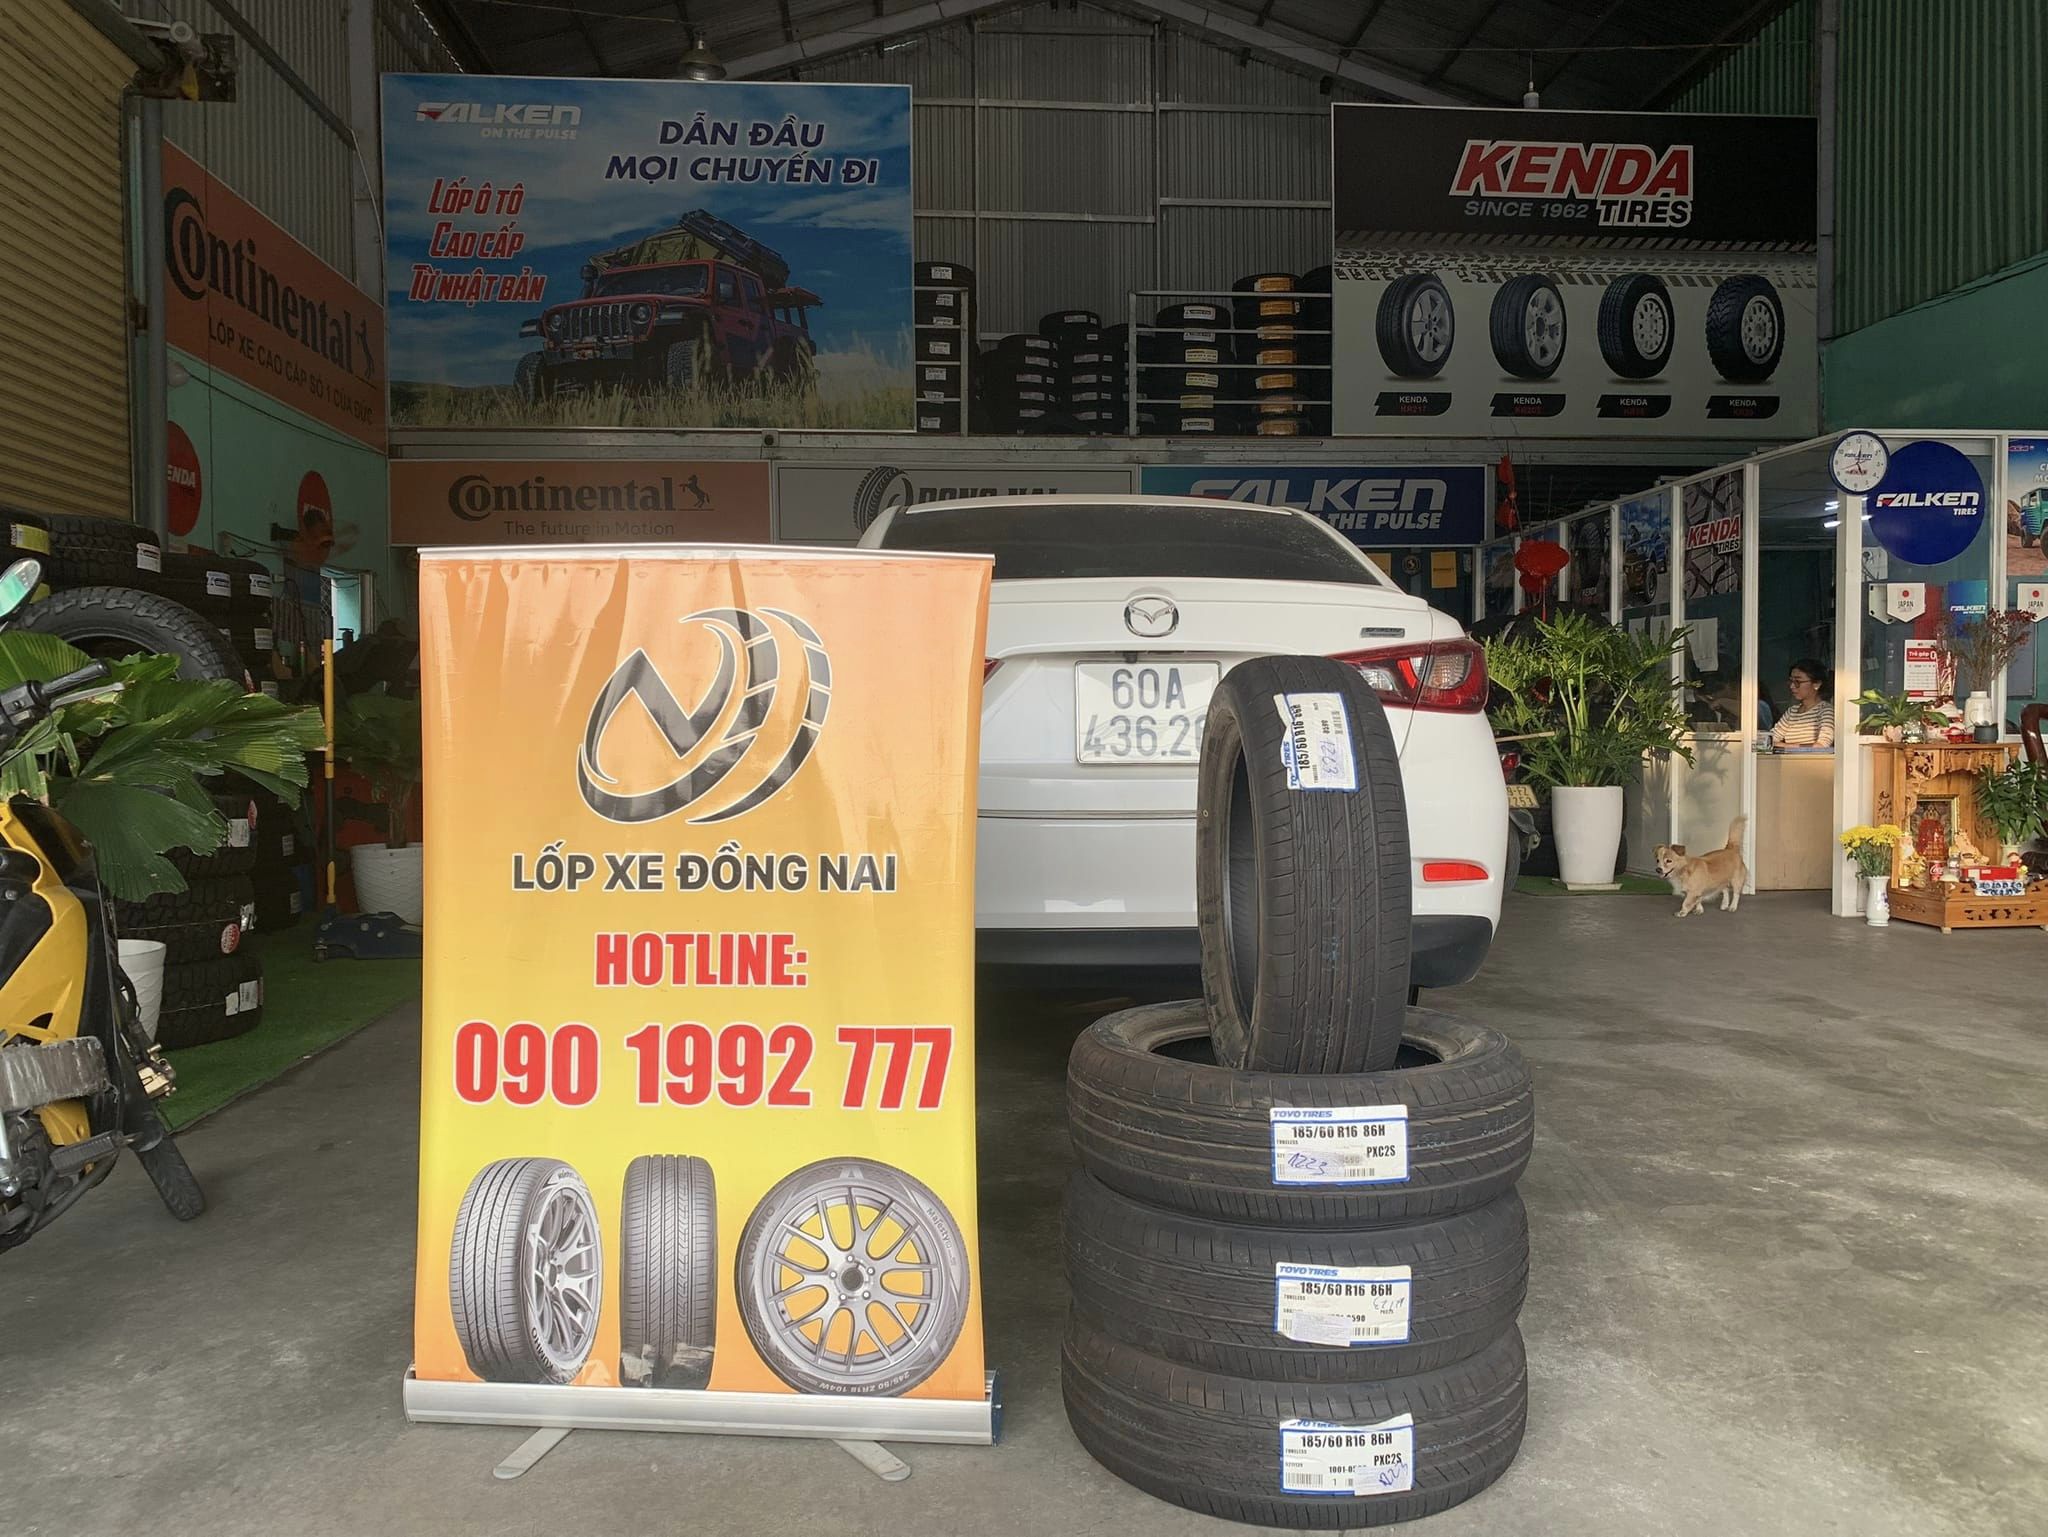 TƯ VẤN : Thay lốp xe Mazda 2 chính hãng ở Biên Hoà, Đồng Nai.